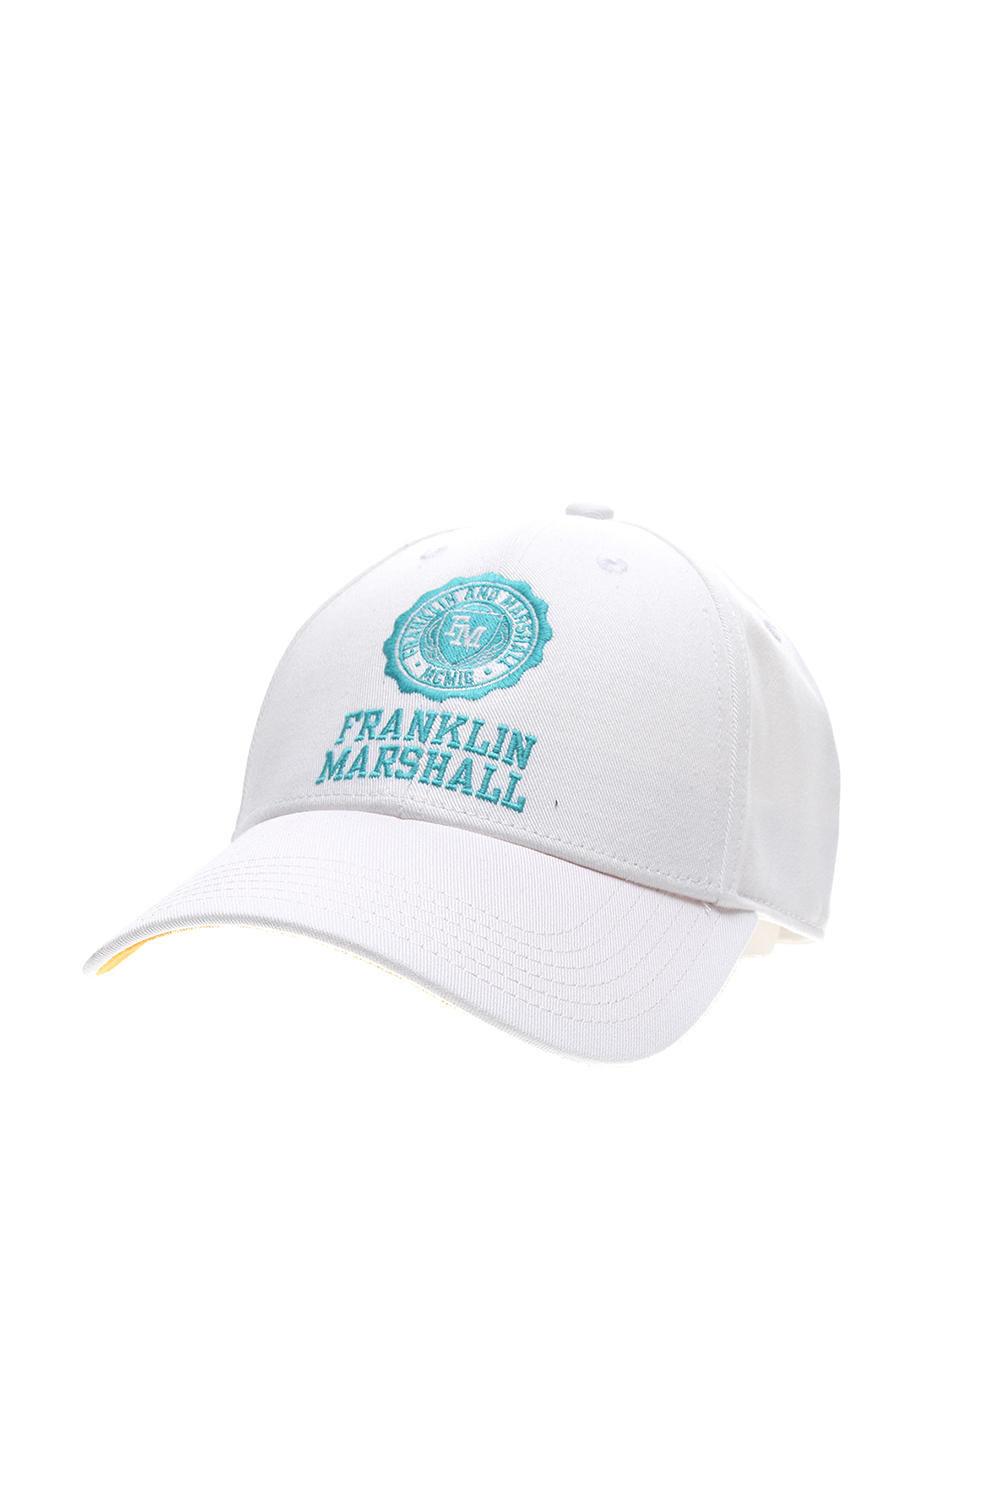 Ανδρικά/Αξεσουάρ/Καπέλα/Casual FRANKLIN & MARSHALL - Ανδρικό καπέλο baseball FRANKLIN & MARSHALL λευκό